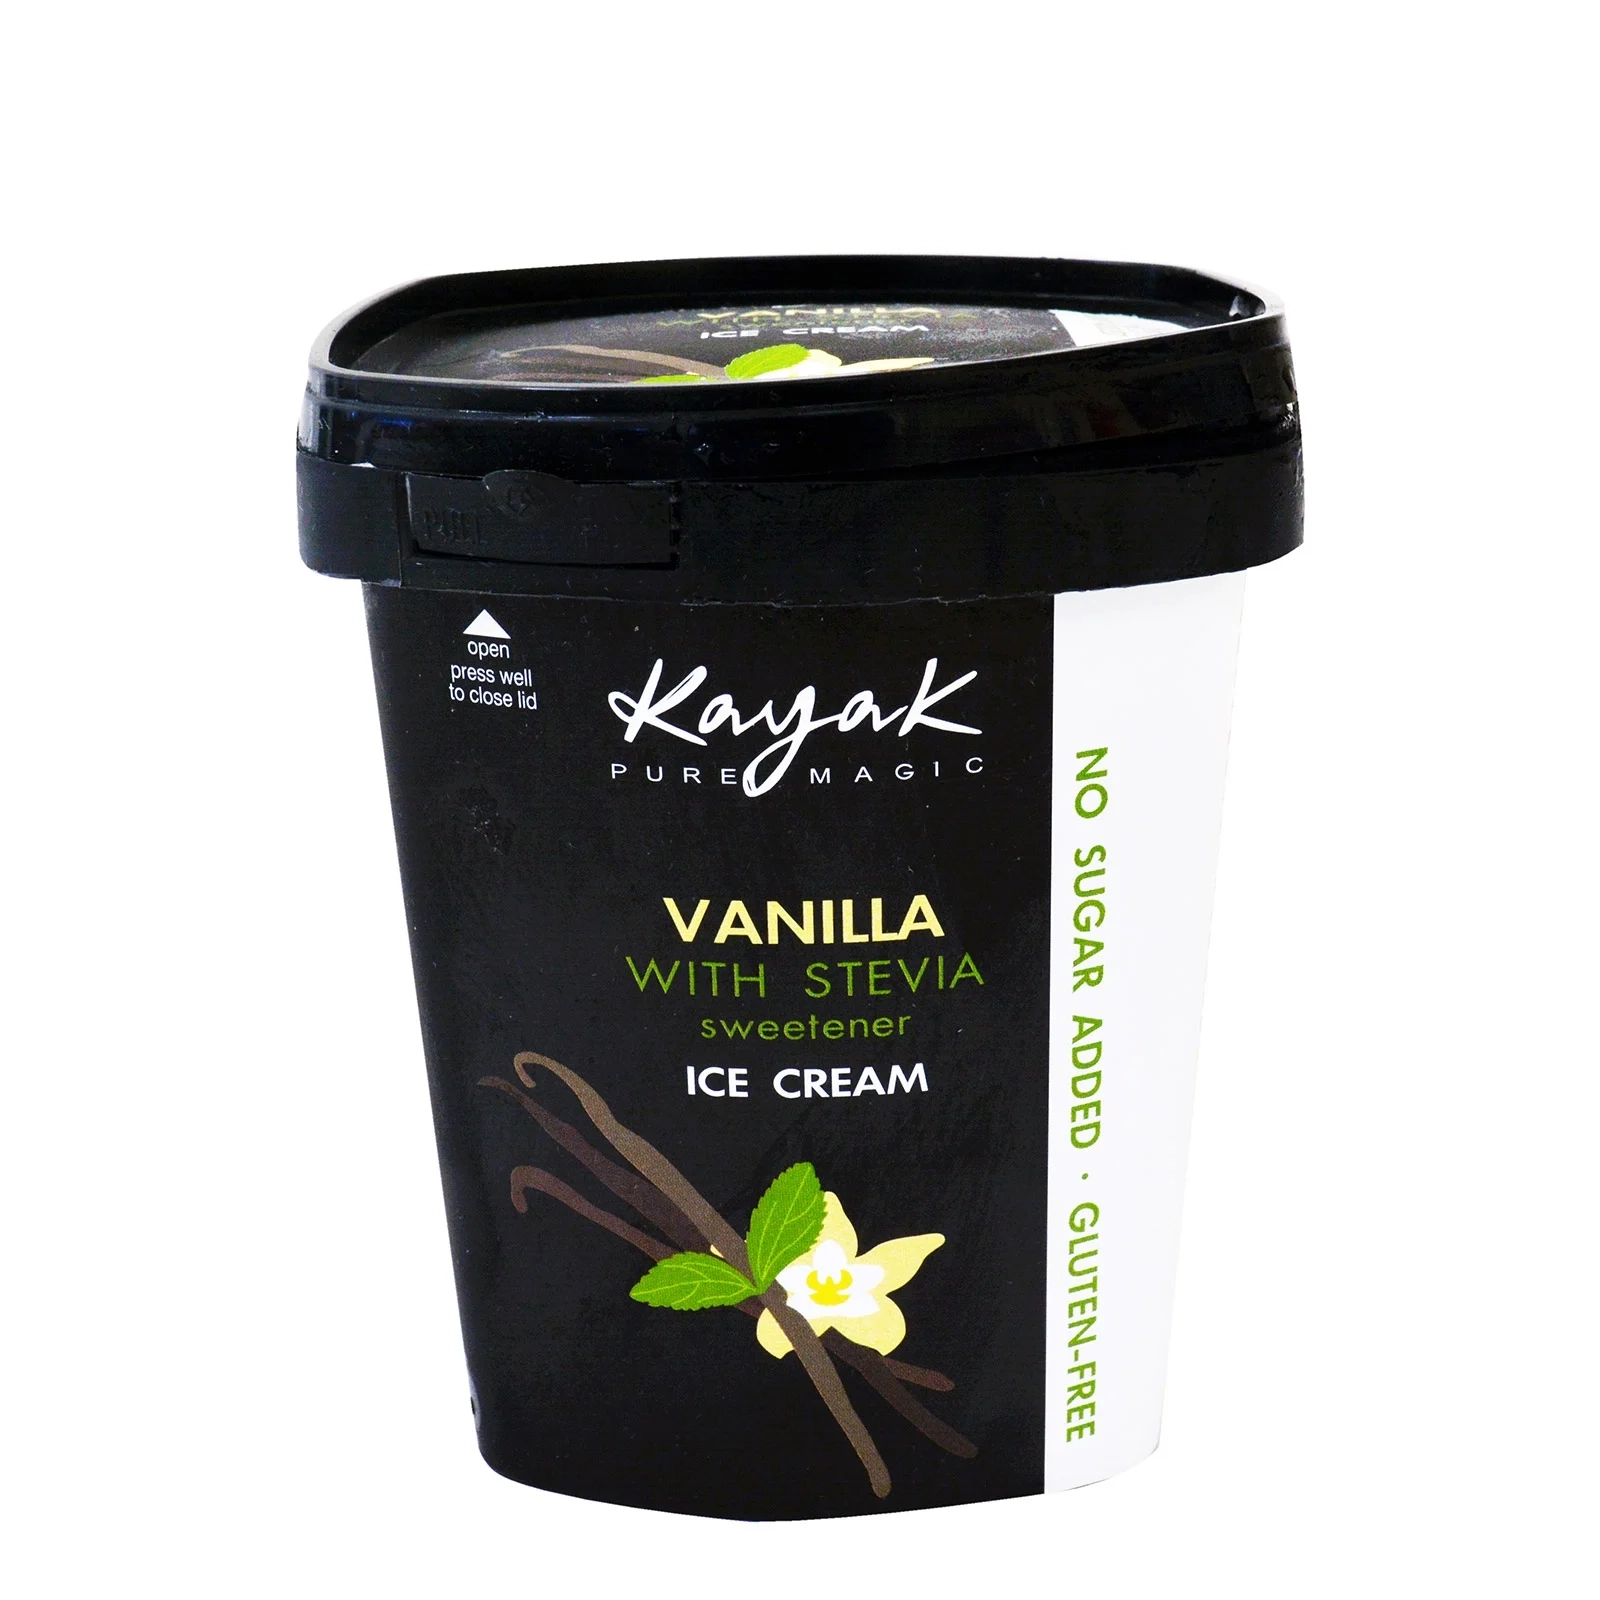 Gluten free vanilla ice cream with stevia